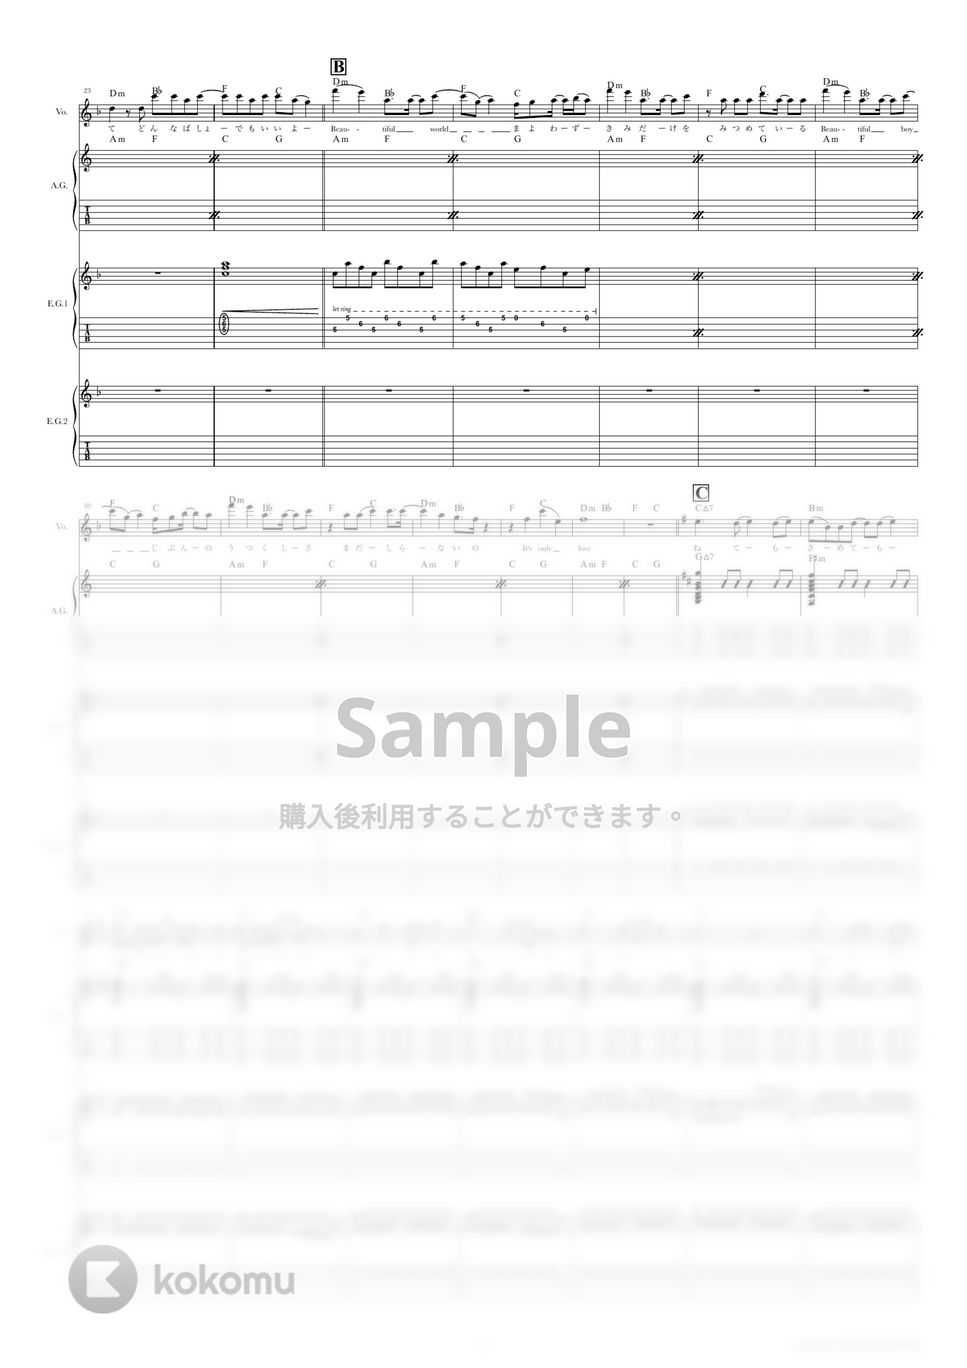 宇多田　ヒカル - BEAUTIFUL WORLD（PLANib Acoustica Mix） (ギタースコア・歌詞・コード付き) by TRIAD GUITAR SCHOOL